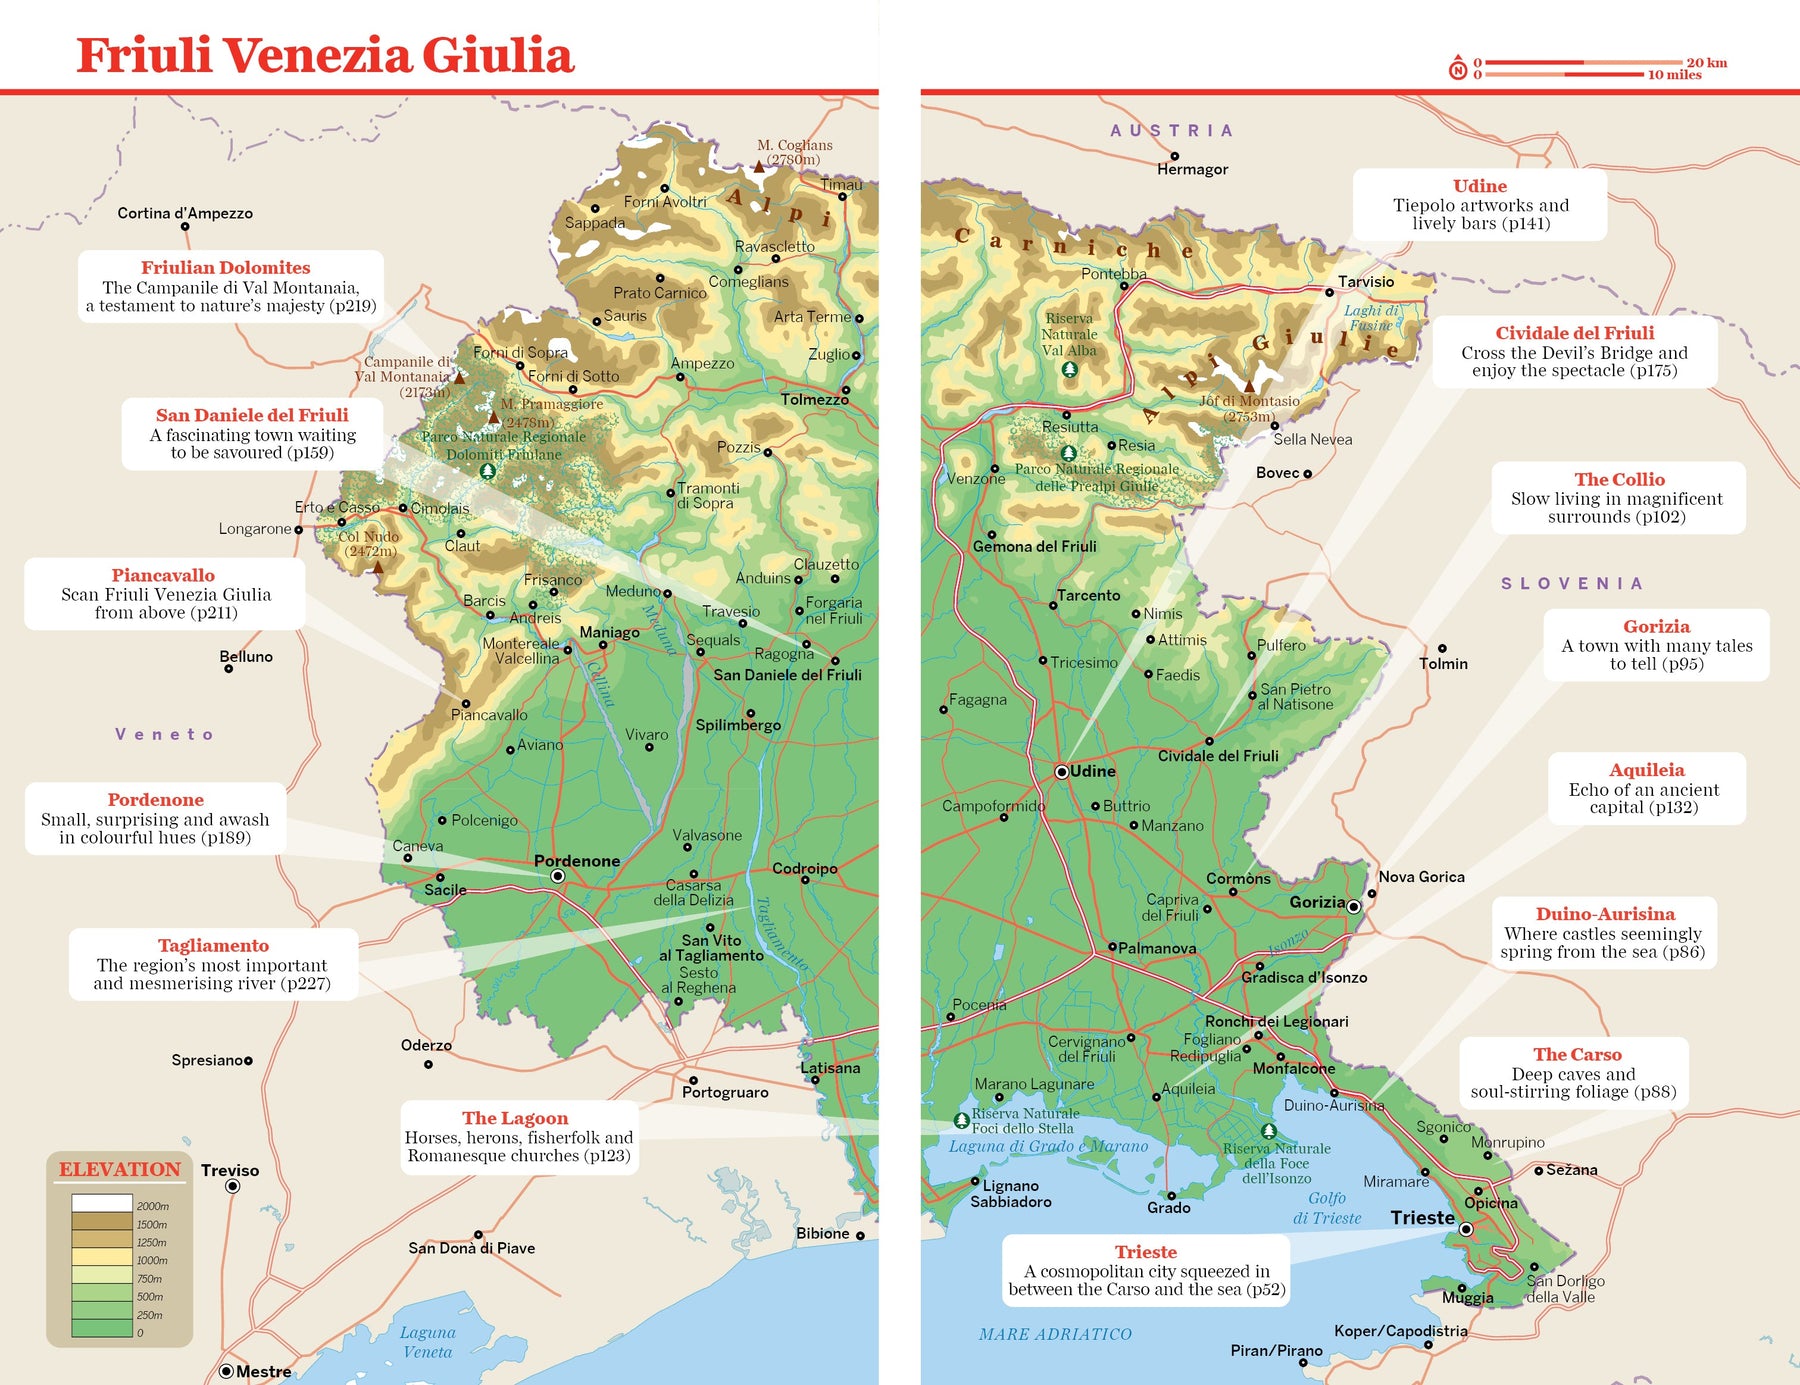 Friuli Venezia Giulia preview